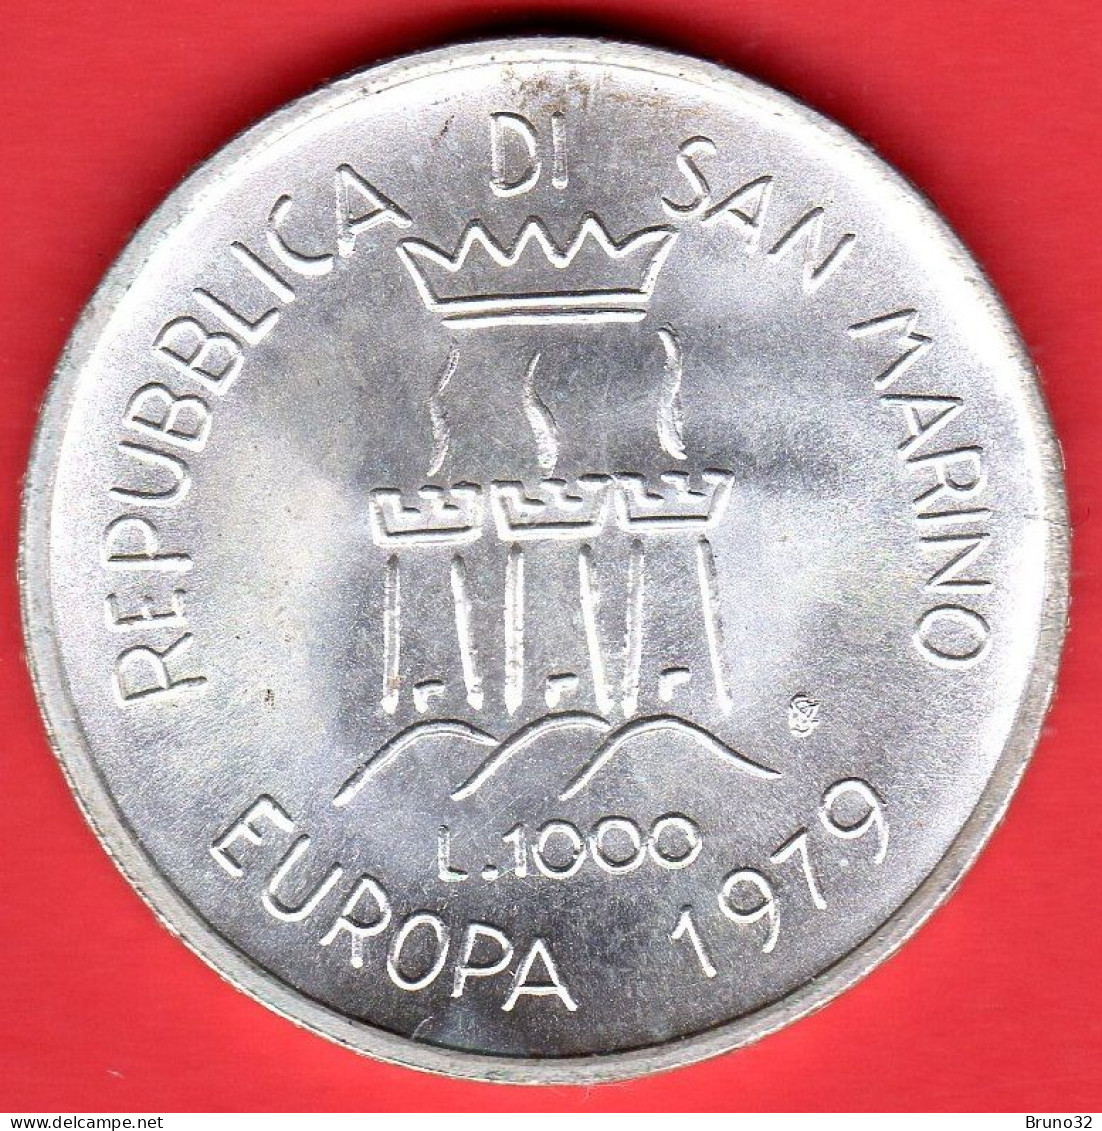 SAN MARINO - 1979 - 1000 Lire Europa - FDC/UNC - Come Da Foto - San Marino